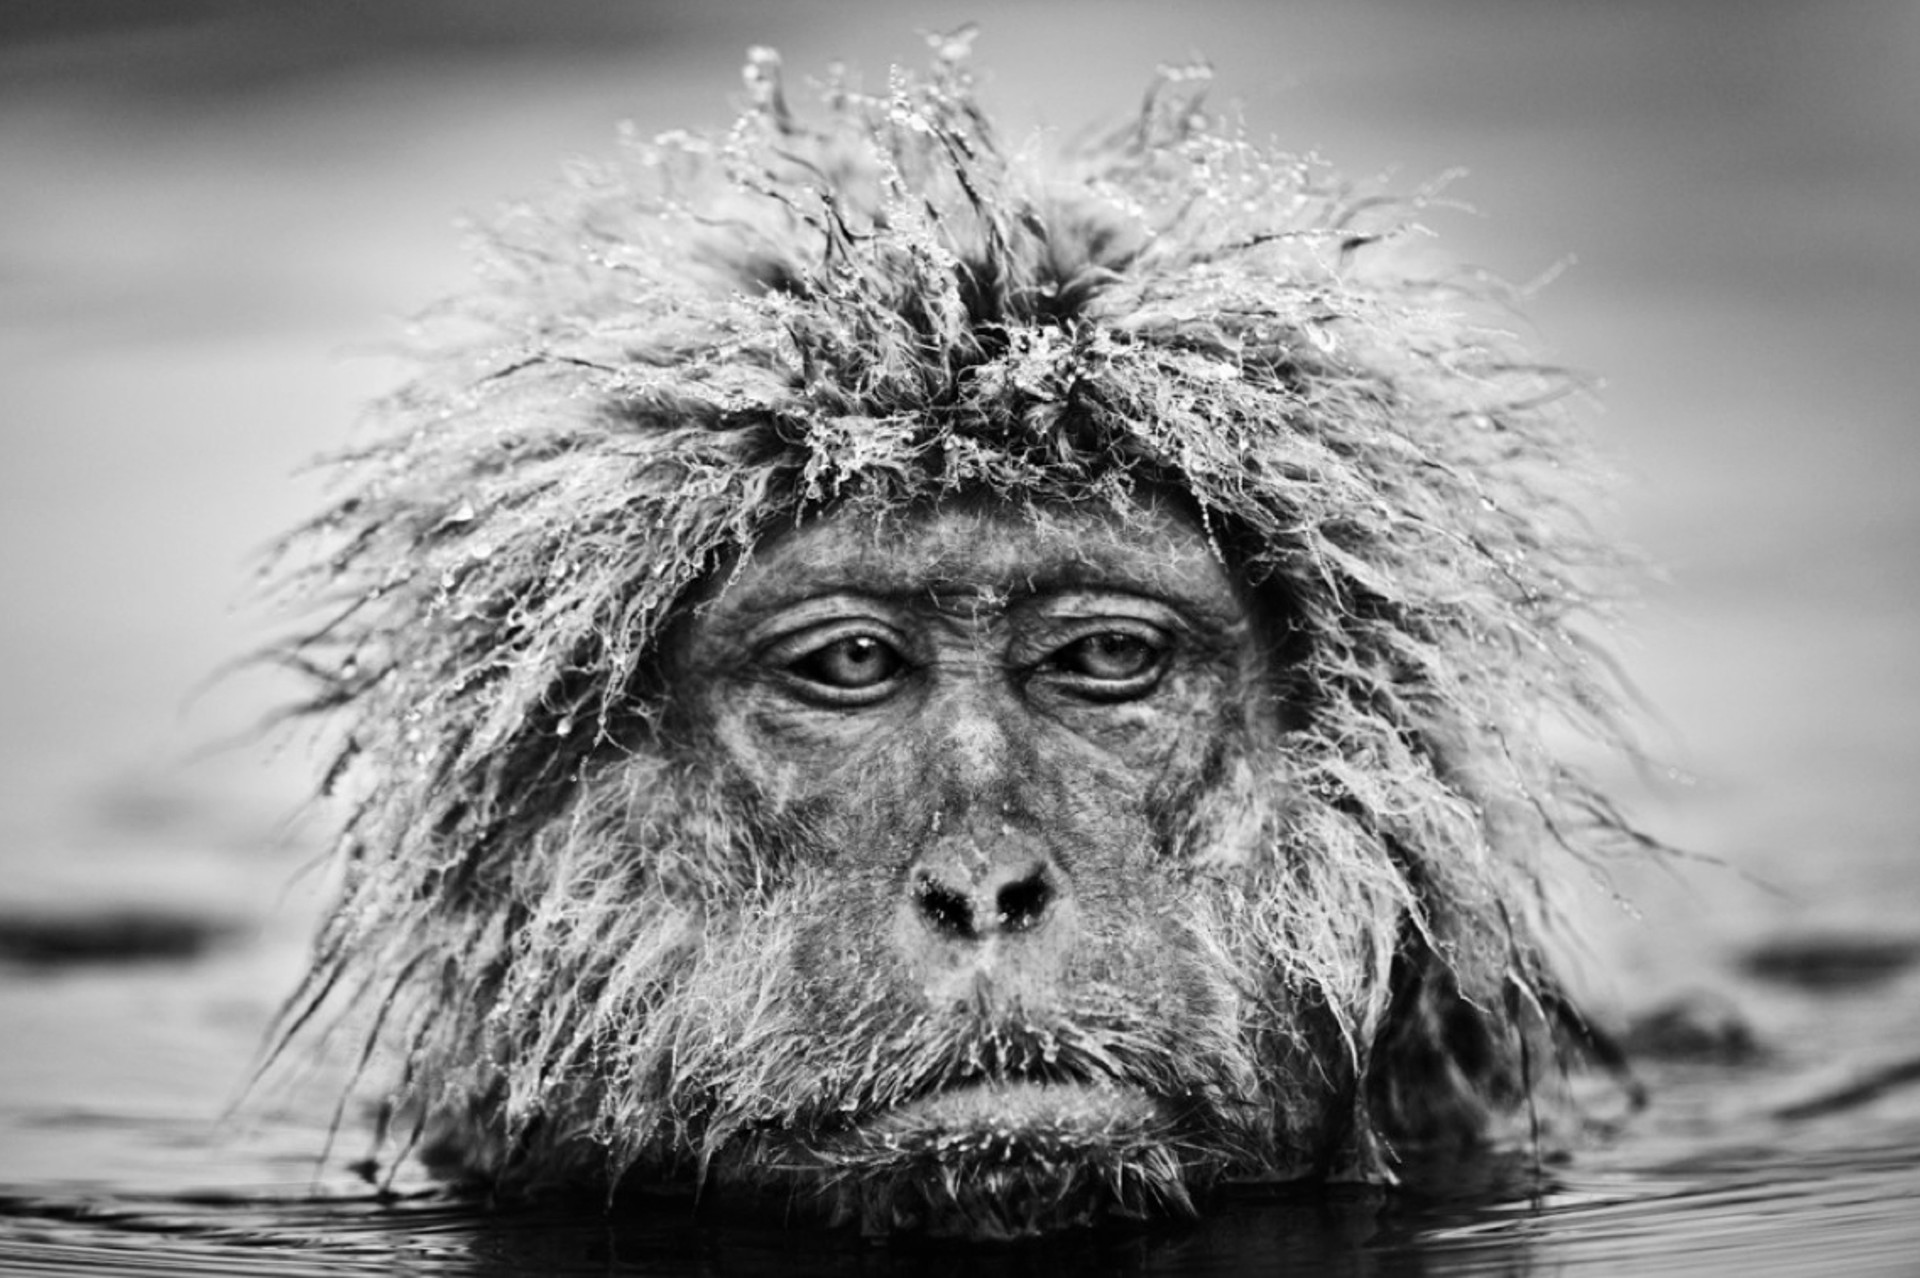 Grumpy Monkey by David Yarrow